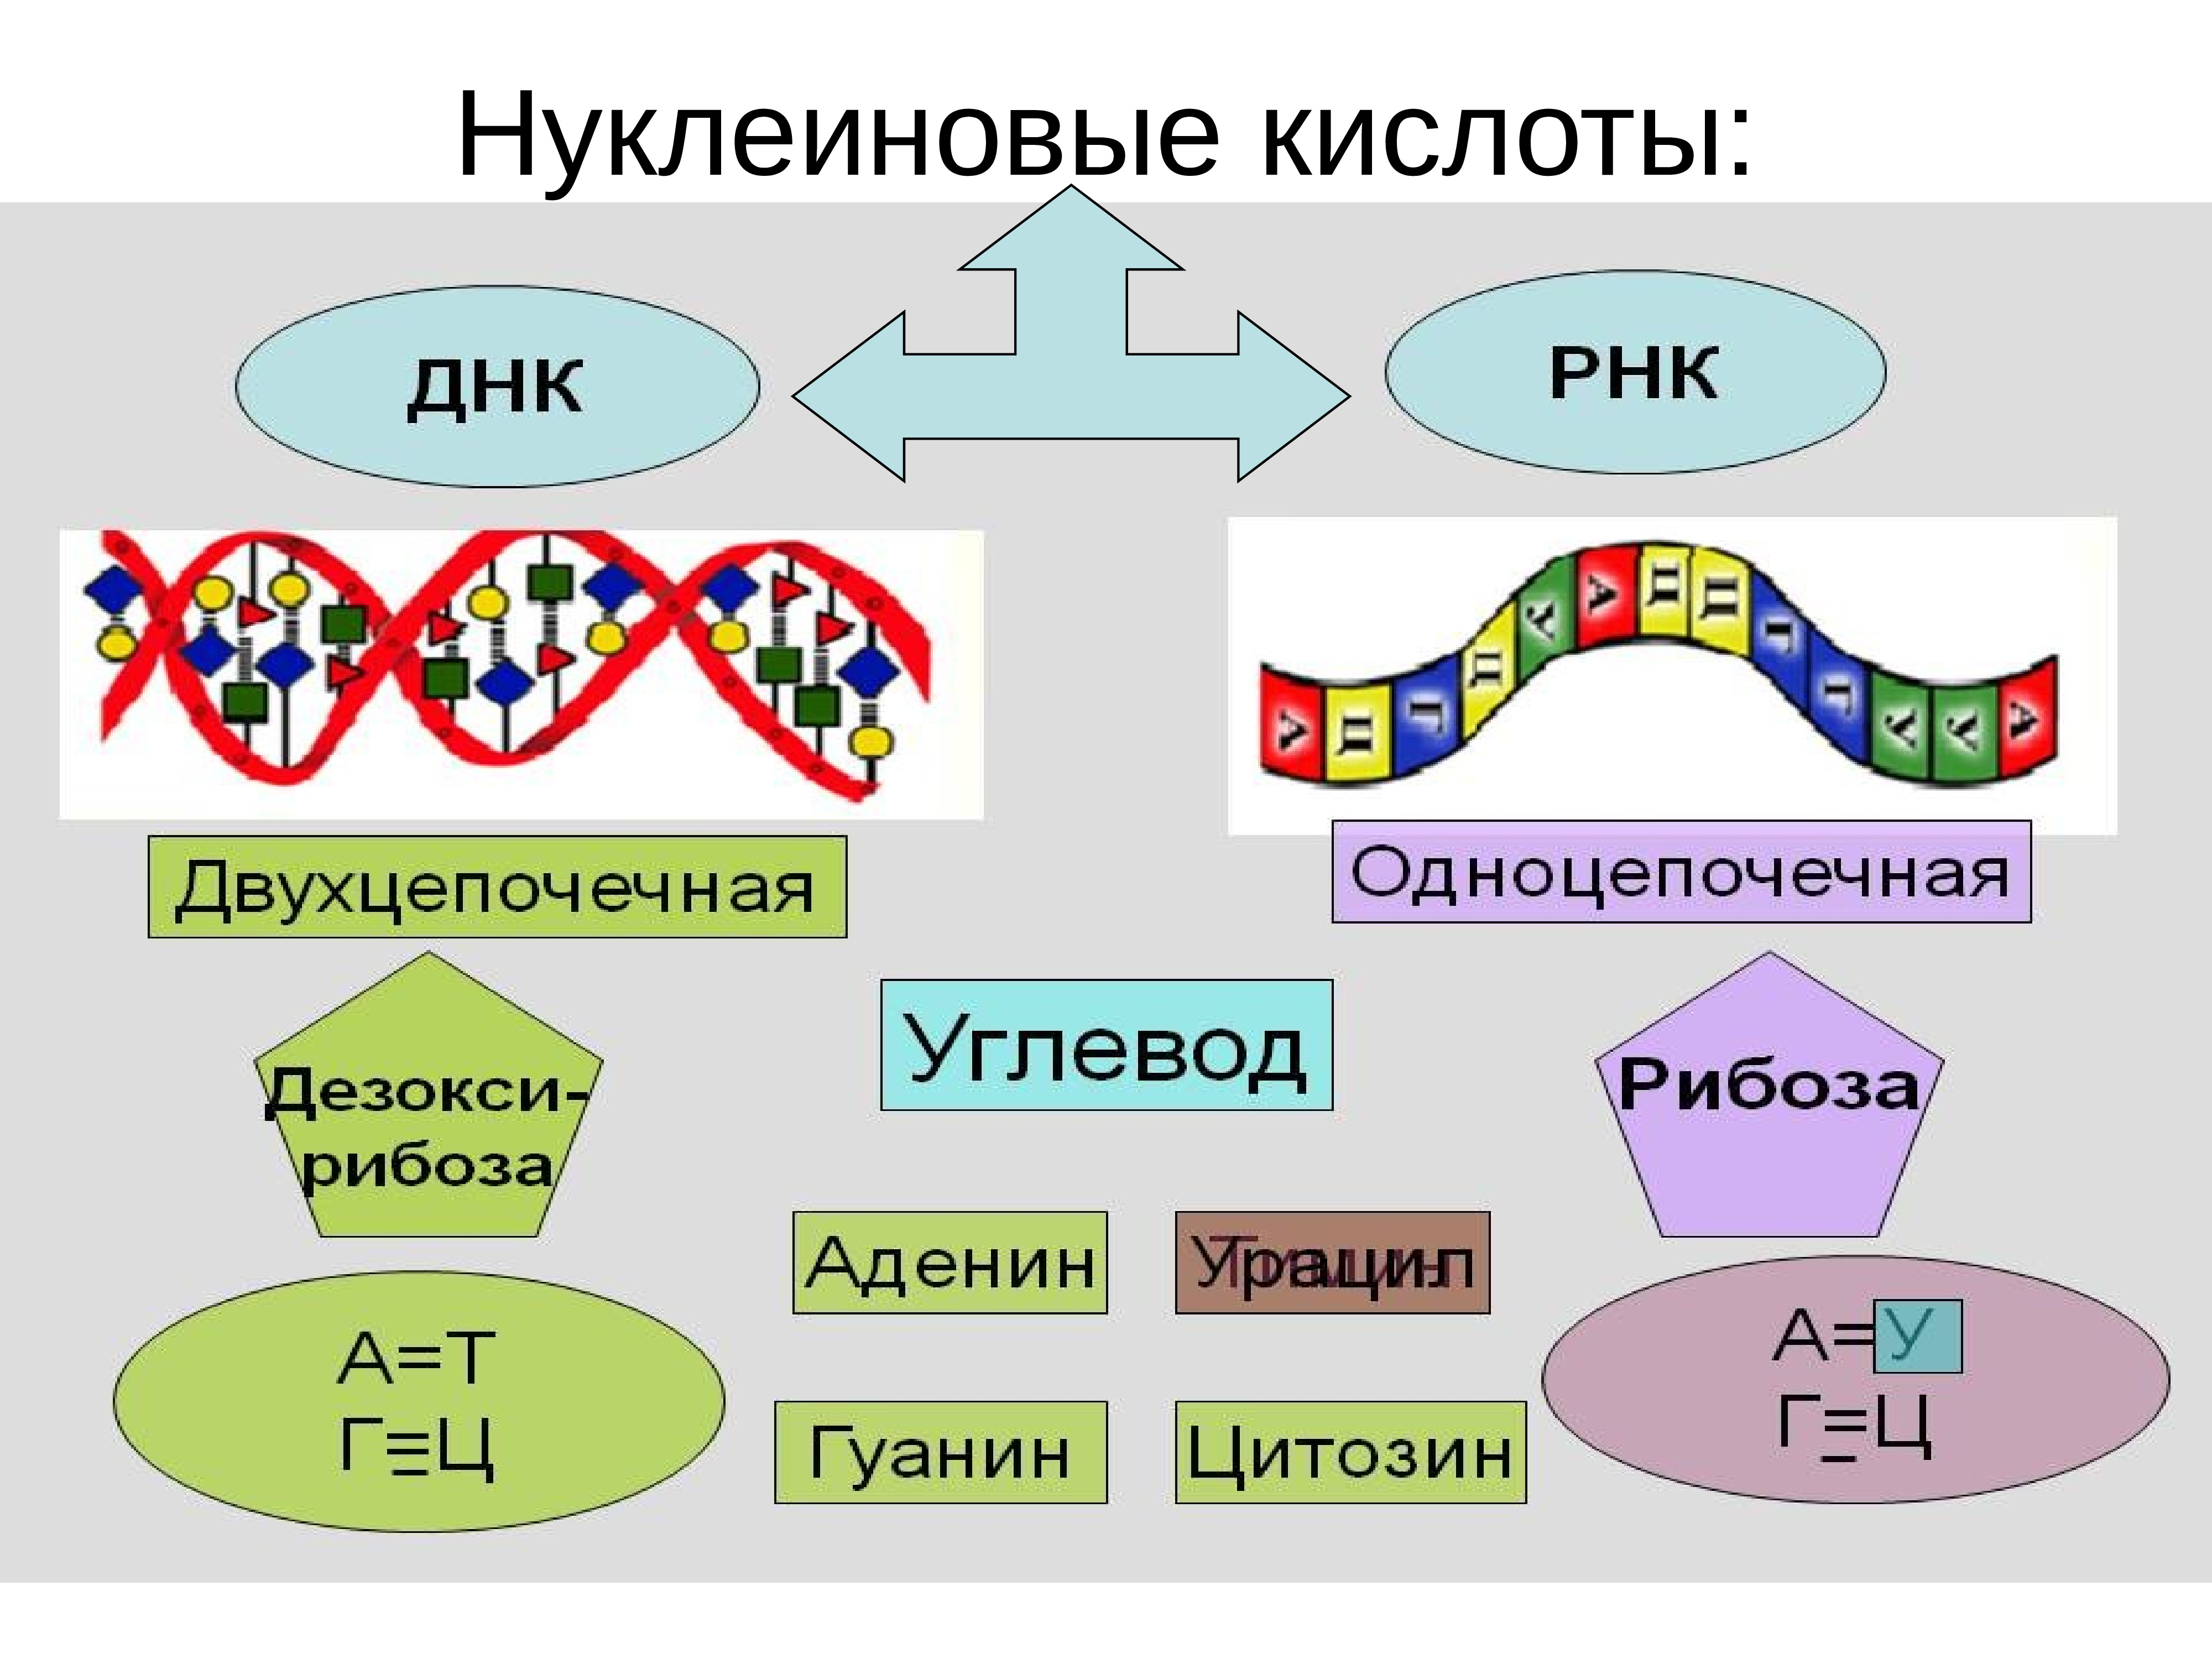 Нуклеиновые кислоты просто. Нуклеиновые кислоты ДНК И РНК. Строение нуклеиновых кислот ДНК И РНК. Строение нуклеиновые кислоты ДНК схема. Нуклеиновая кислота ИРНК.